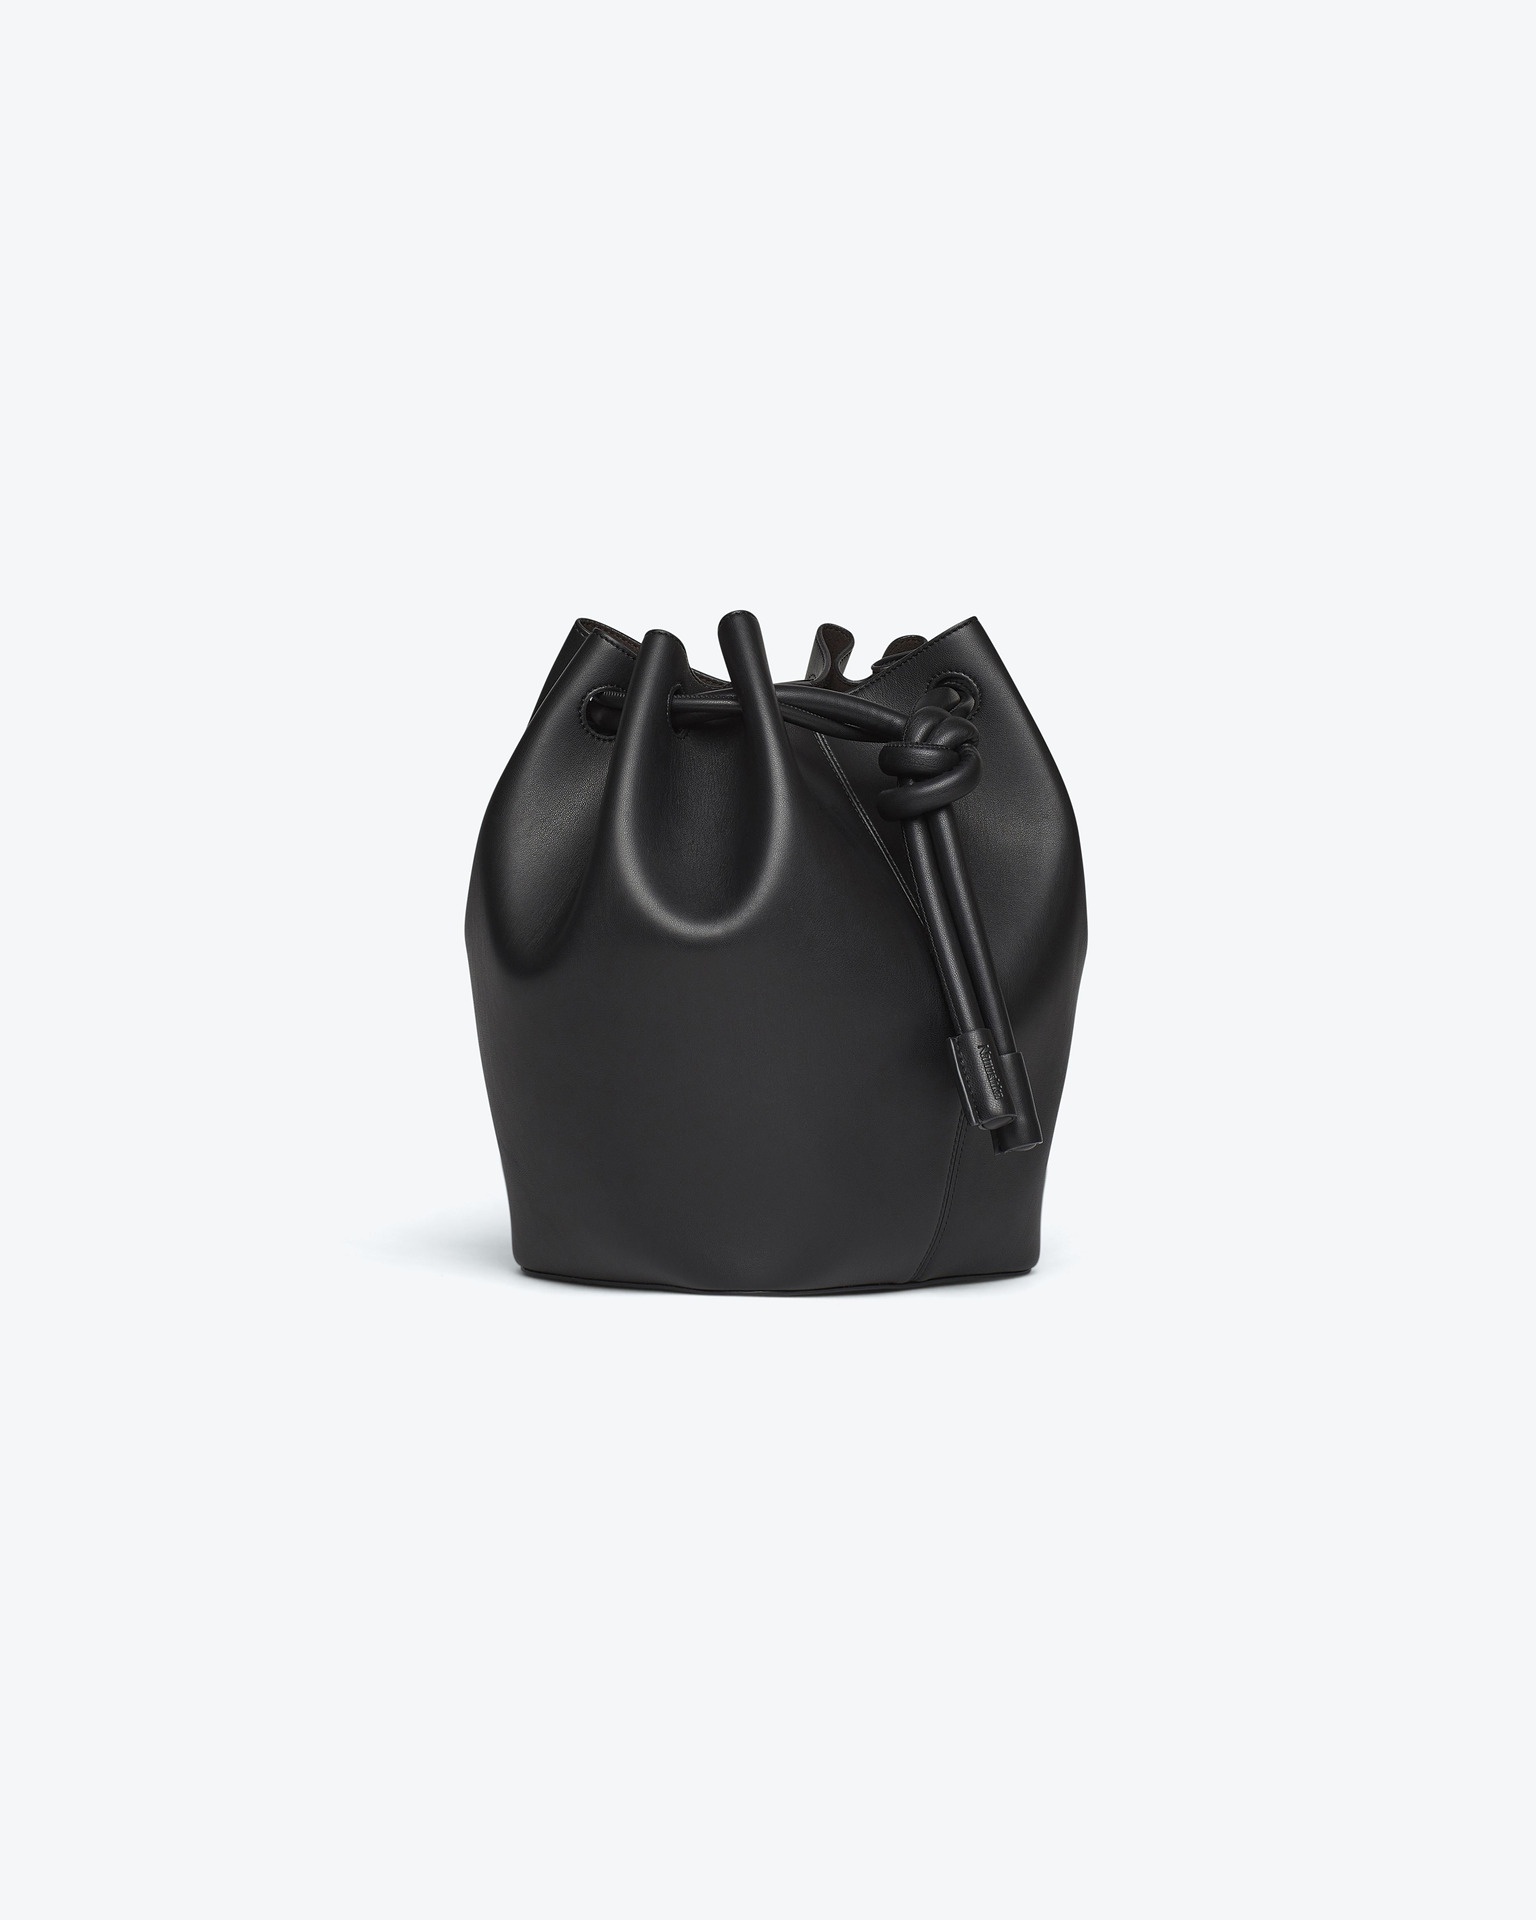 ELONGATED BUCKET MEDIUM - Alt-nappa leather medium bucket handle bag - Black - 4